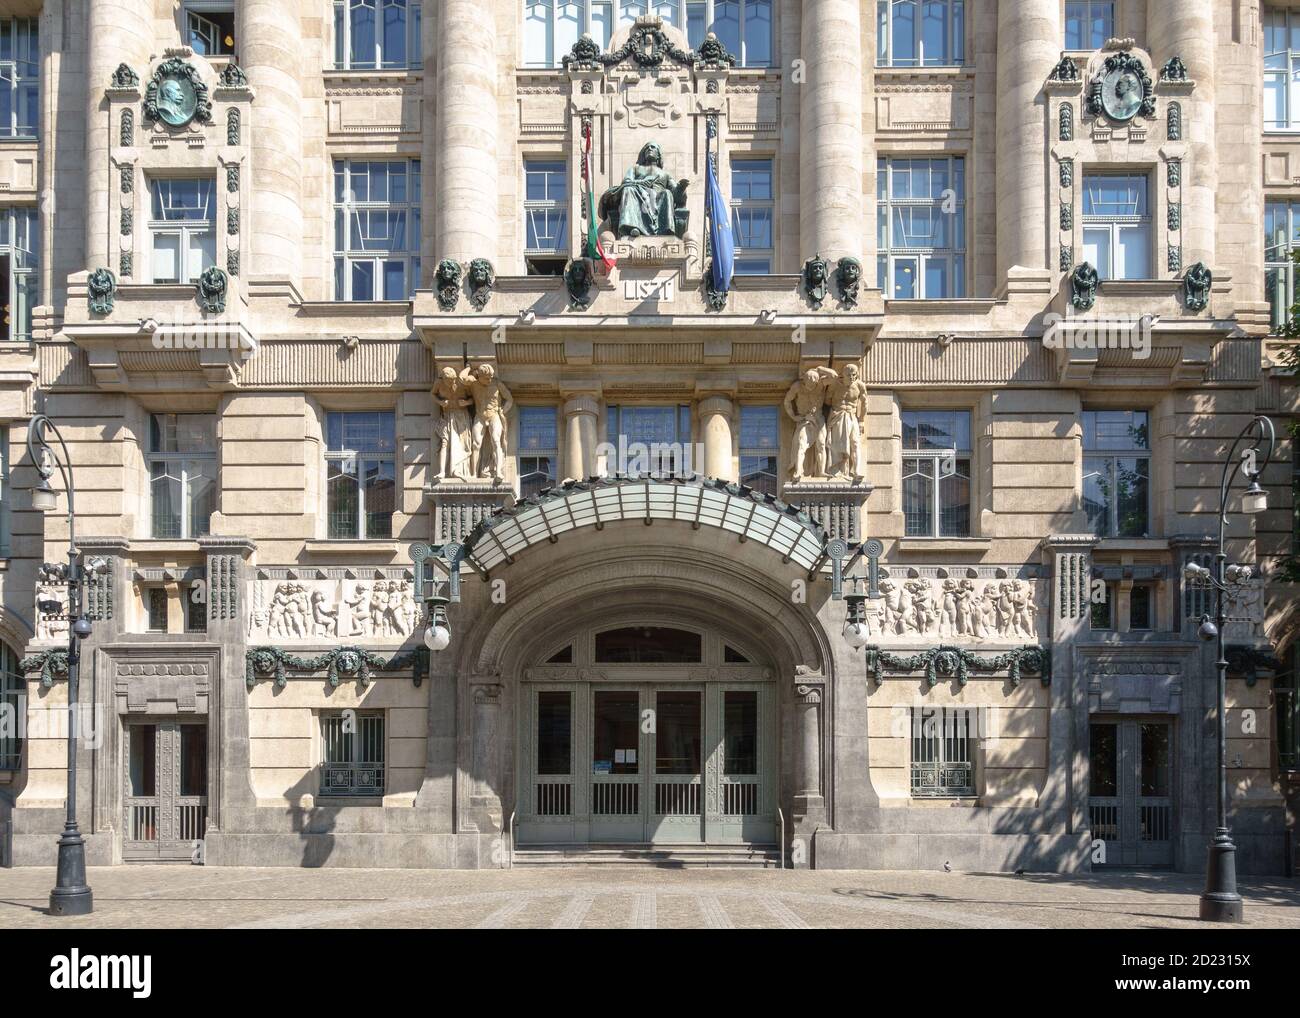 La facciata art nouveau restaurata dell'Accademia Liszt di Musica nel centro di Budapest Foto Stock